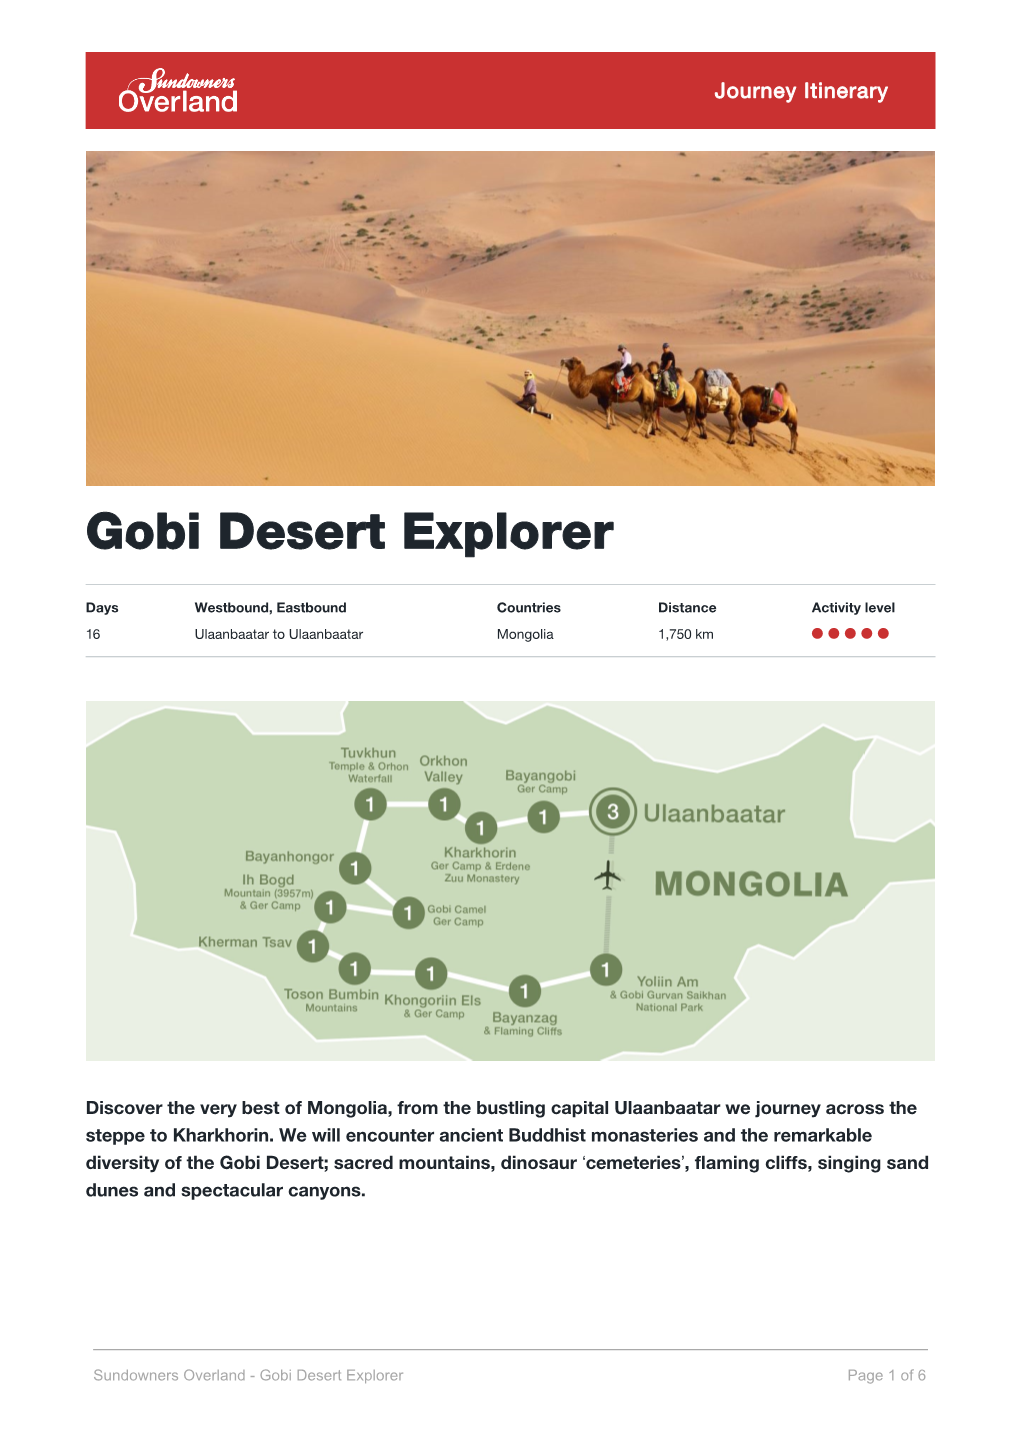 Sundowners Overland - Gobi Desert Explorer Page 1 of 6 Itinerary